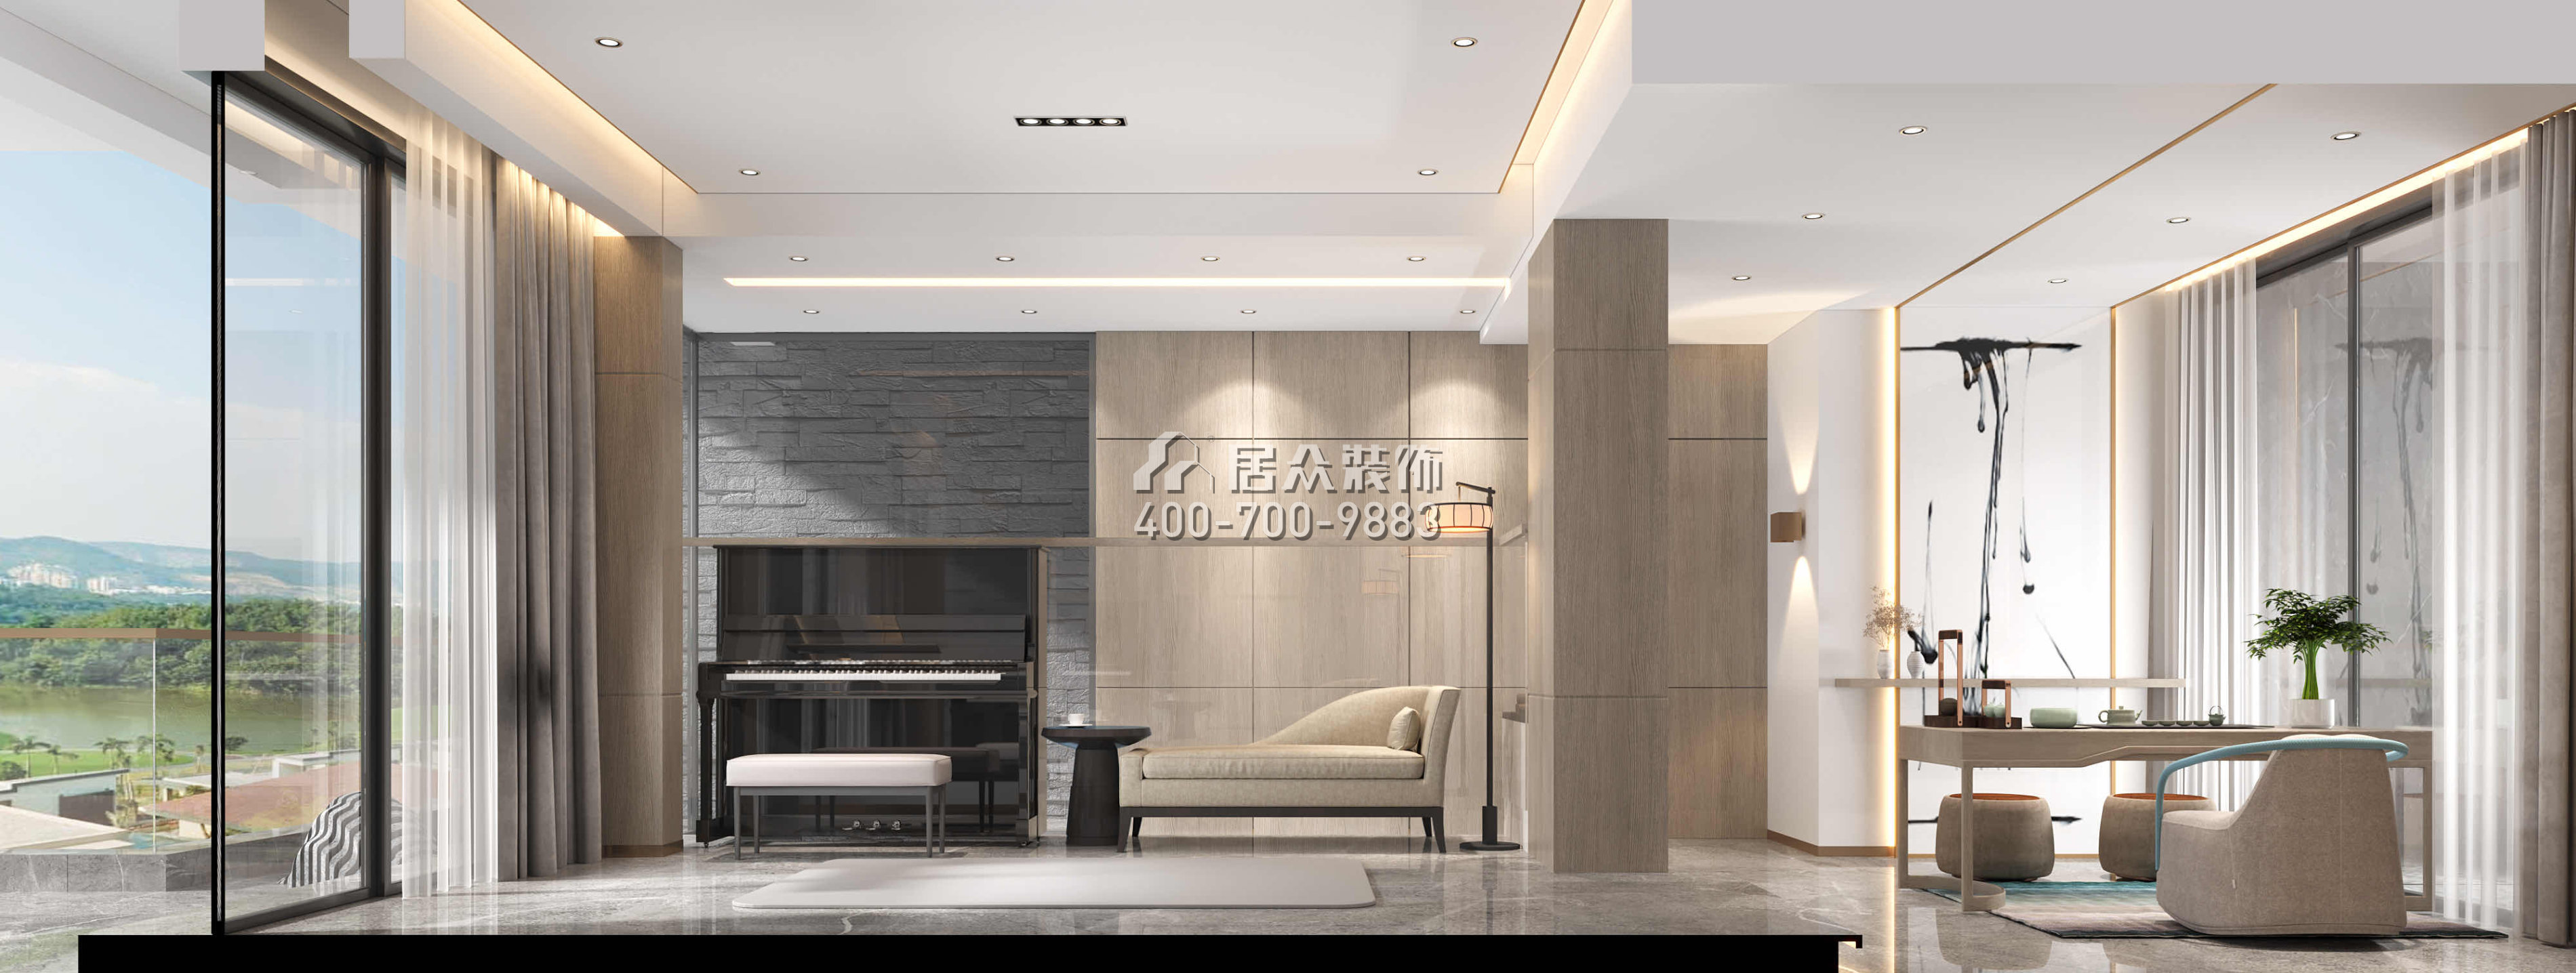 翠湖香山别苑200平方米中式风格复式户型娱乐室kok电竞平台效果图